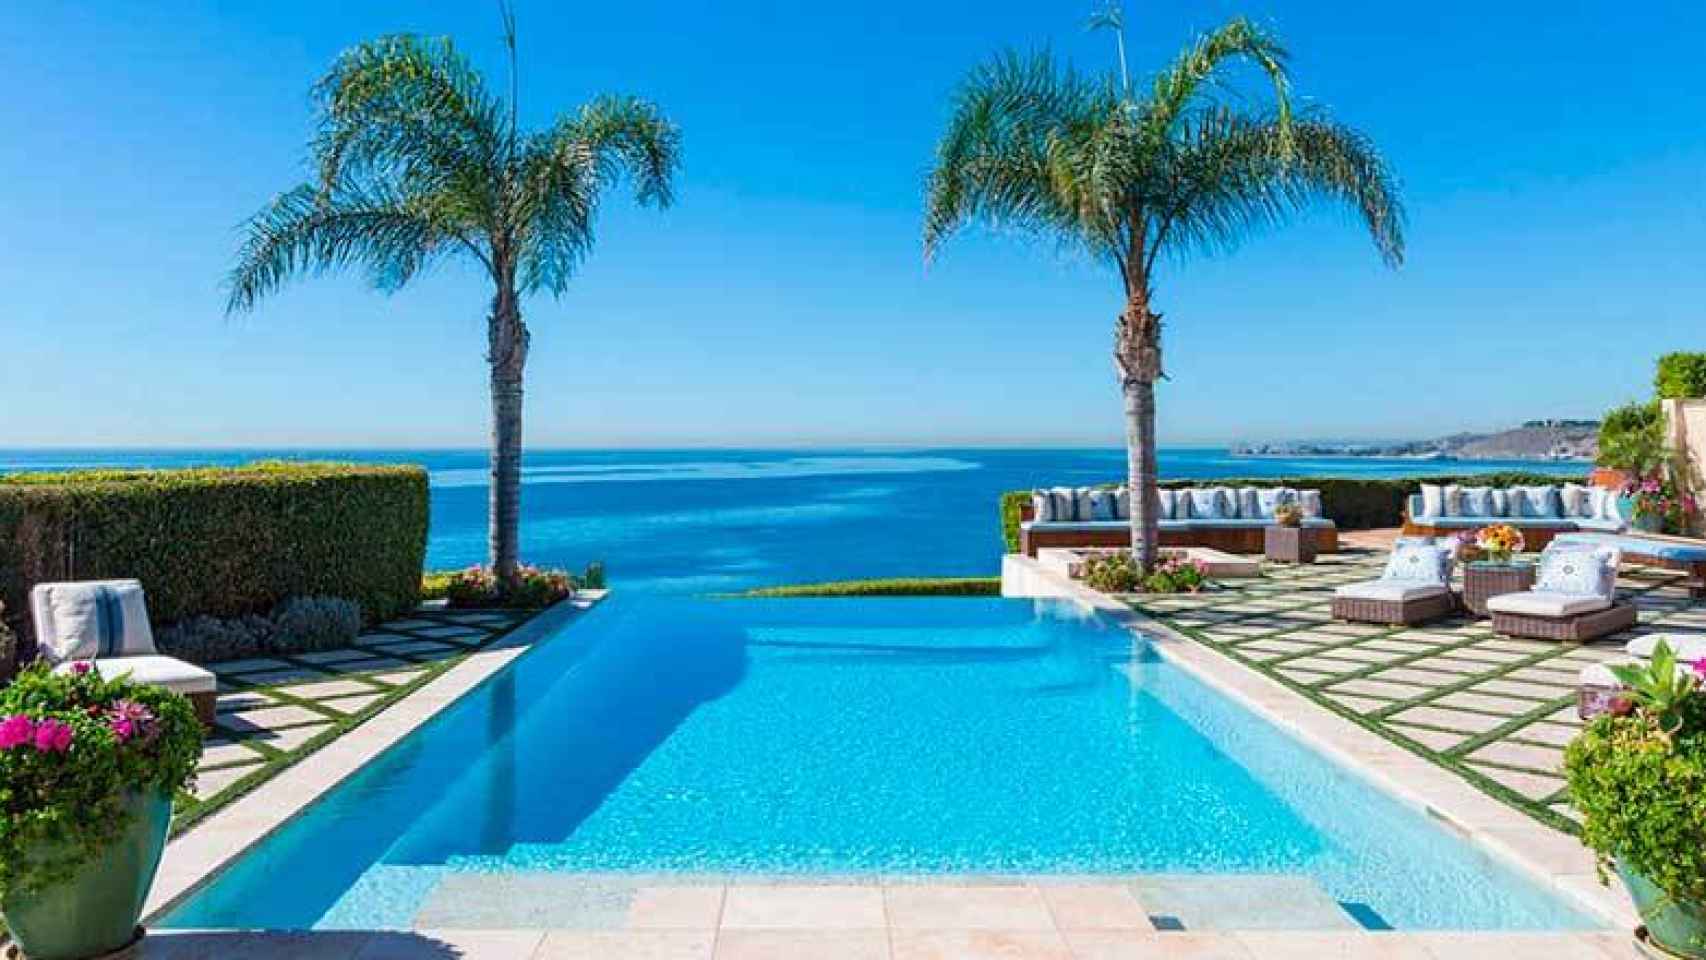 Imagen de la piscina infinita de la que disfrutaron las Hadid hasta la venta de su casa, en 2015.